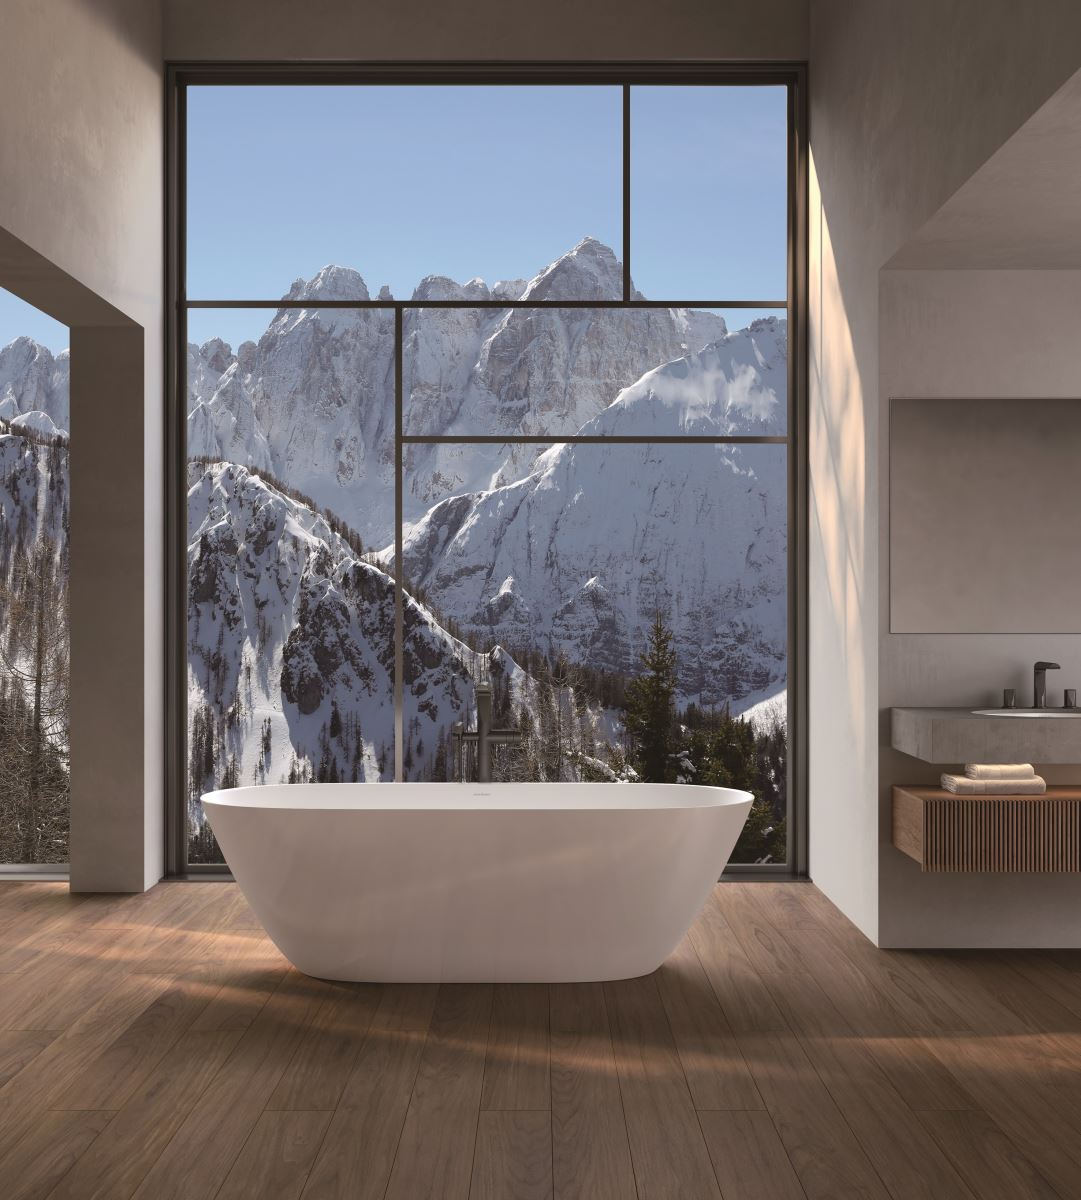 火山石灰岩浴缸保溫性極佳，適合秋冬舒適的泡澡時光，在家便能享受宛如渡假般的療癒感受。